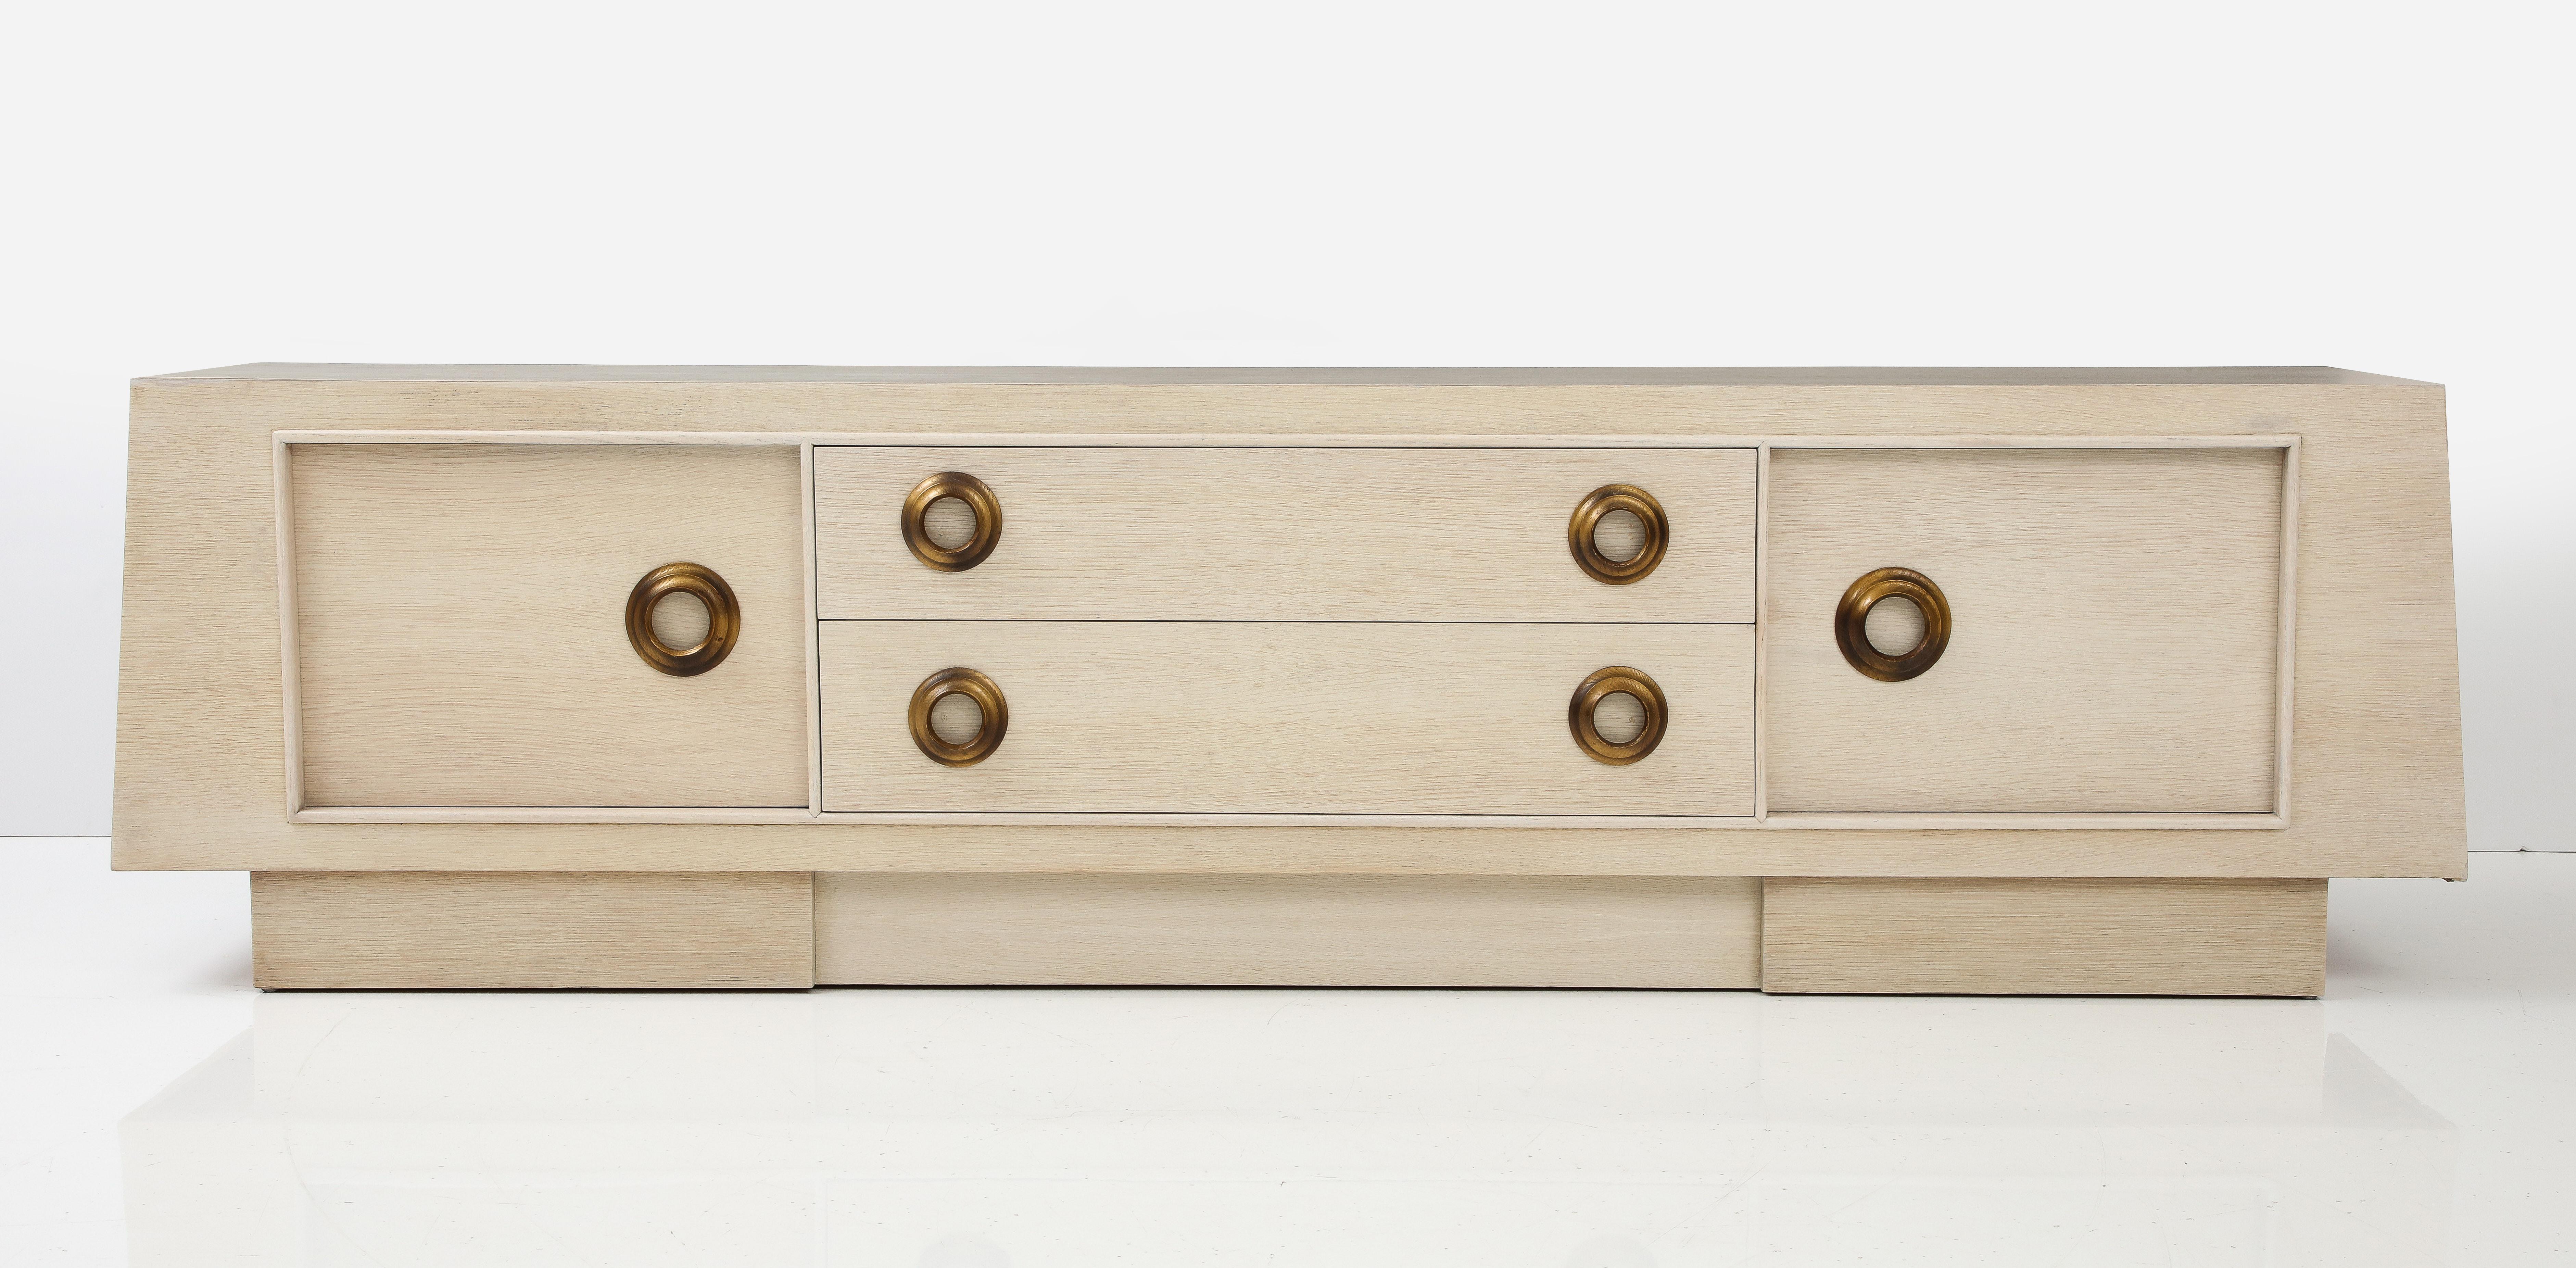 Superbe grand meuble en chêne blanchi de James Mont.
L'armoire a été nouvellement refinie en chêne blanchi naturel et est
accentué par des tirettes dorées à l'ancienne.